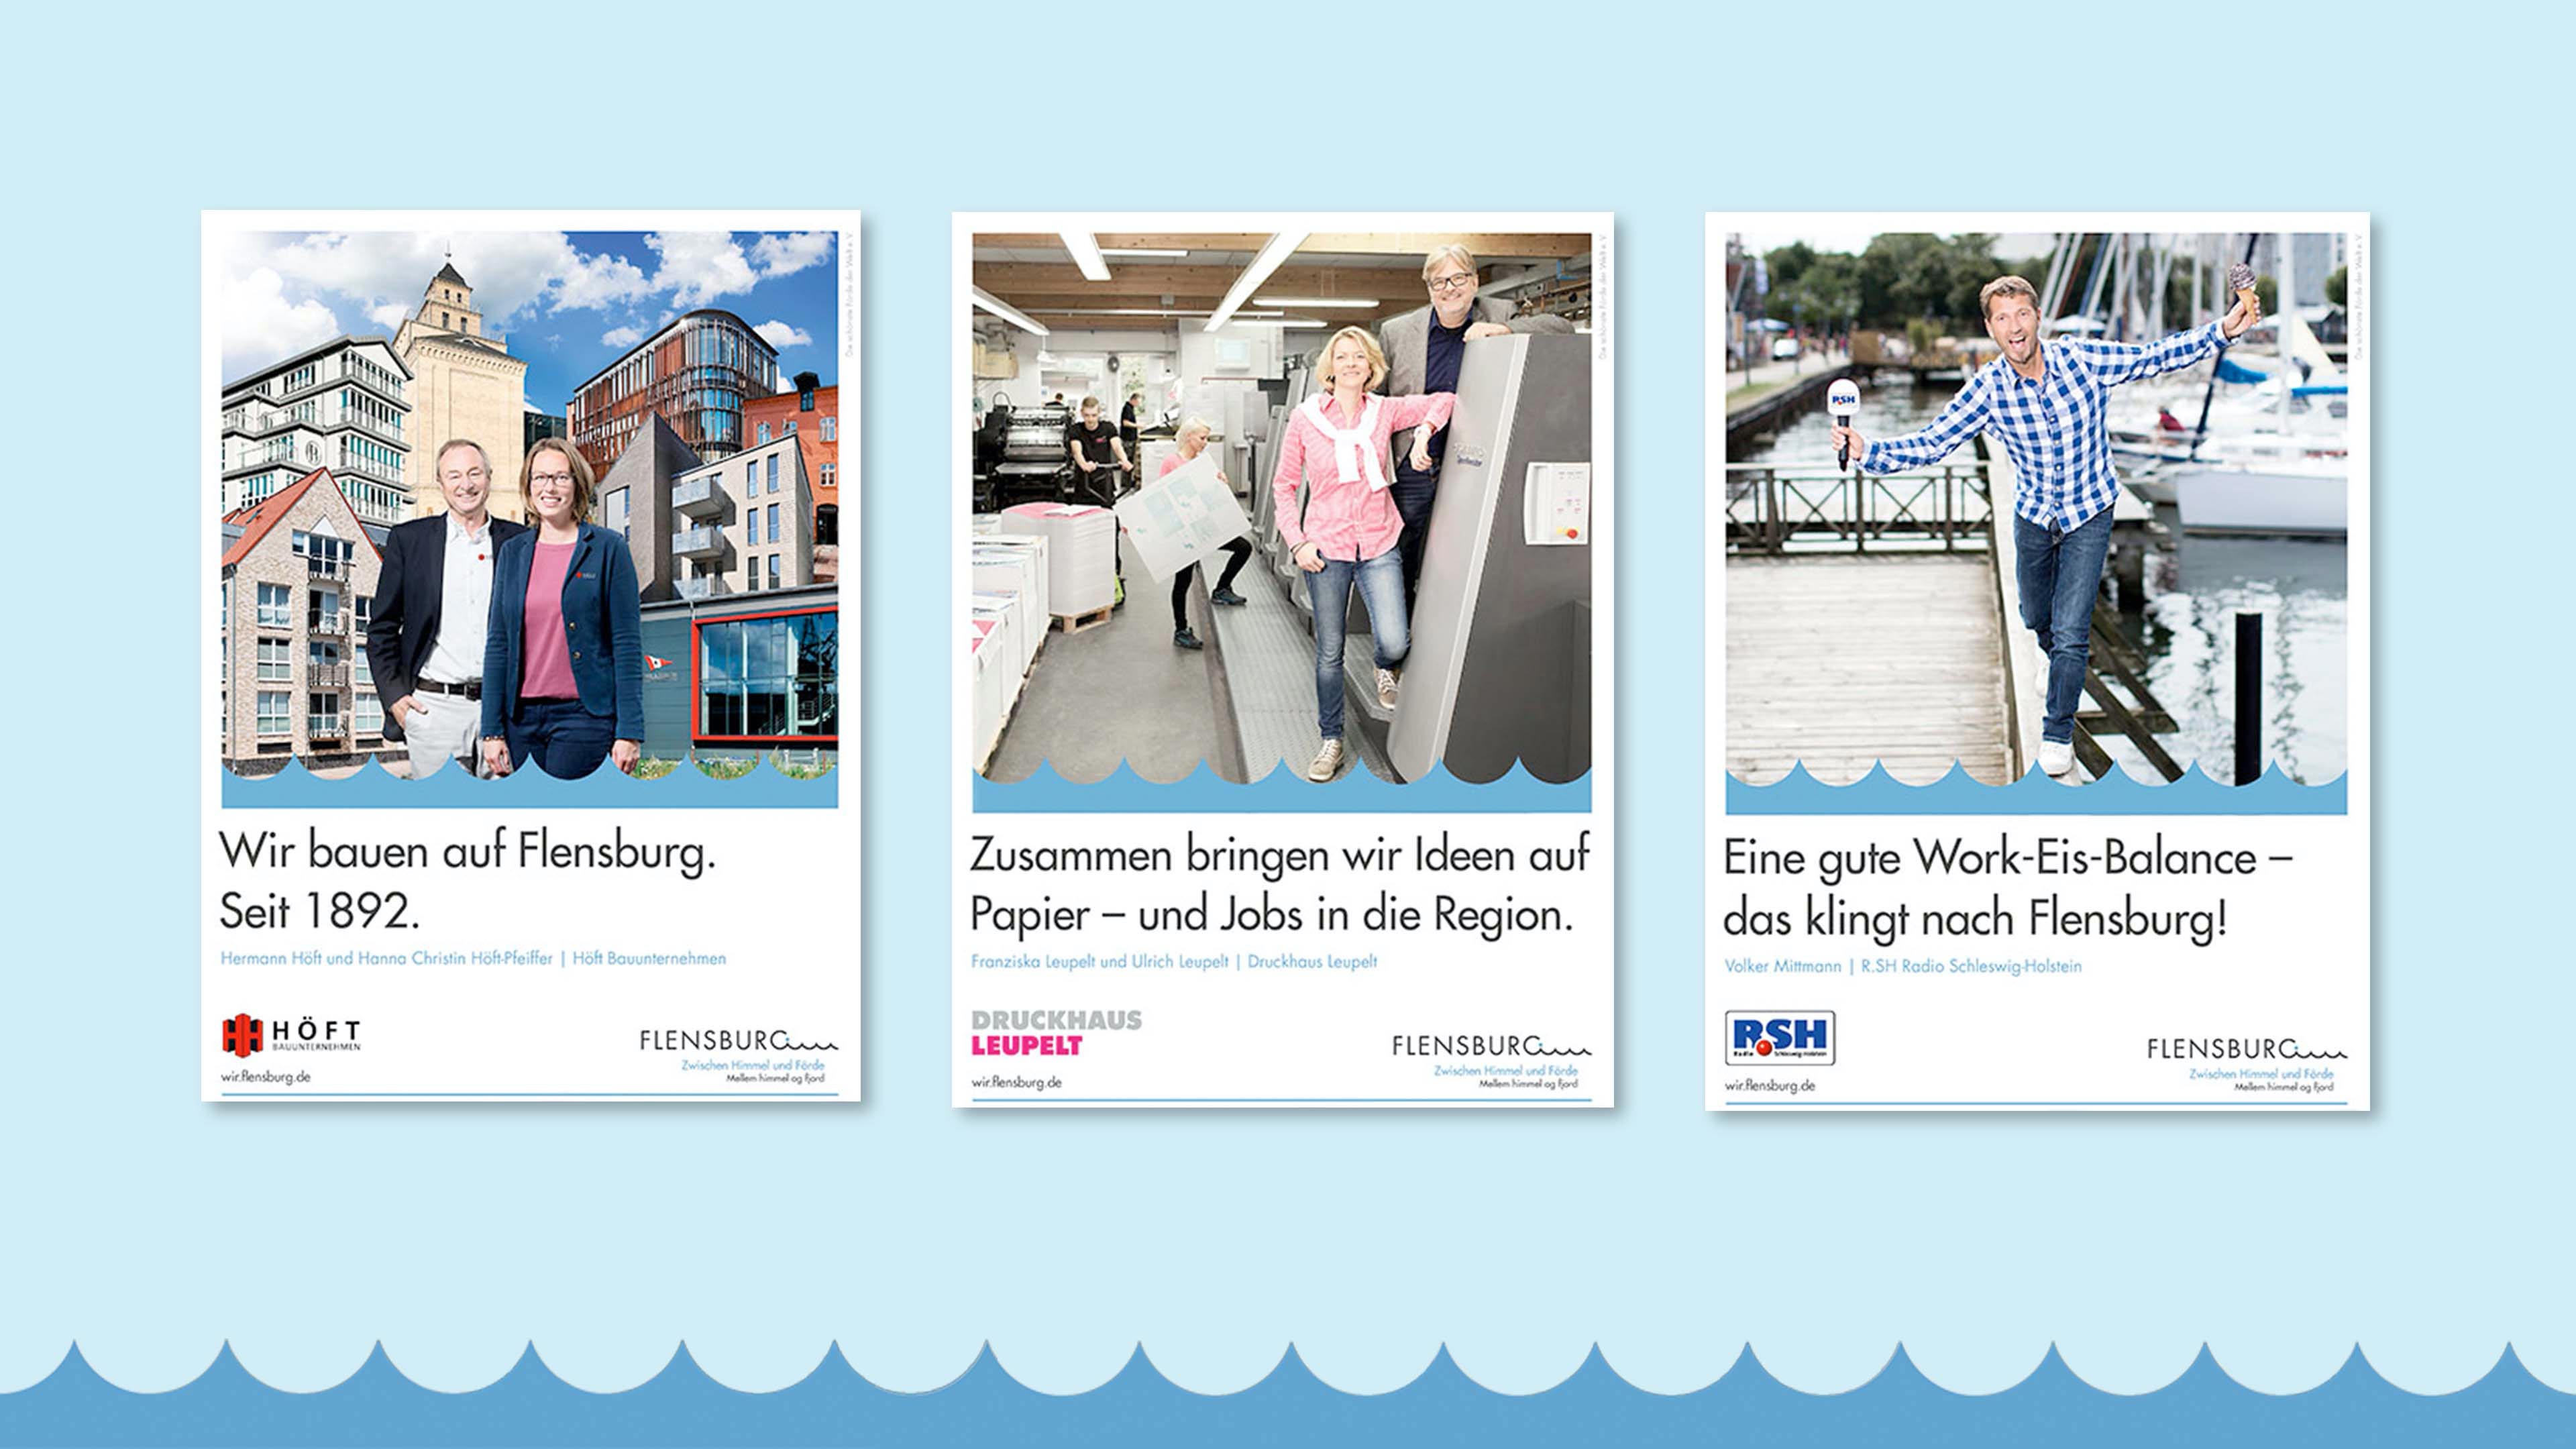 Drei Bilder der Flensburg-Kampagne zeigen je verschiedene Geschäftspersonen mit Firmen- und Flensburglogo und Texten